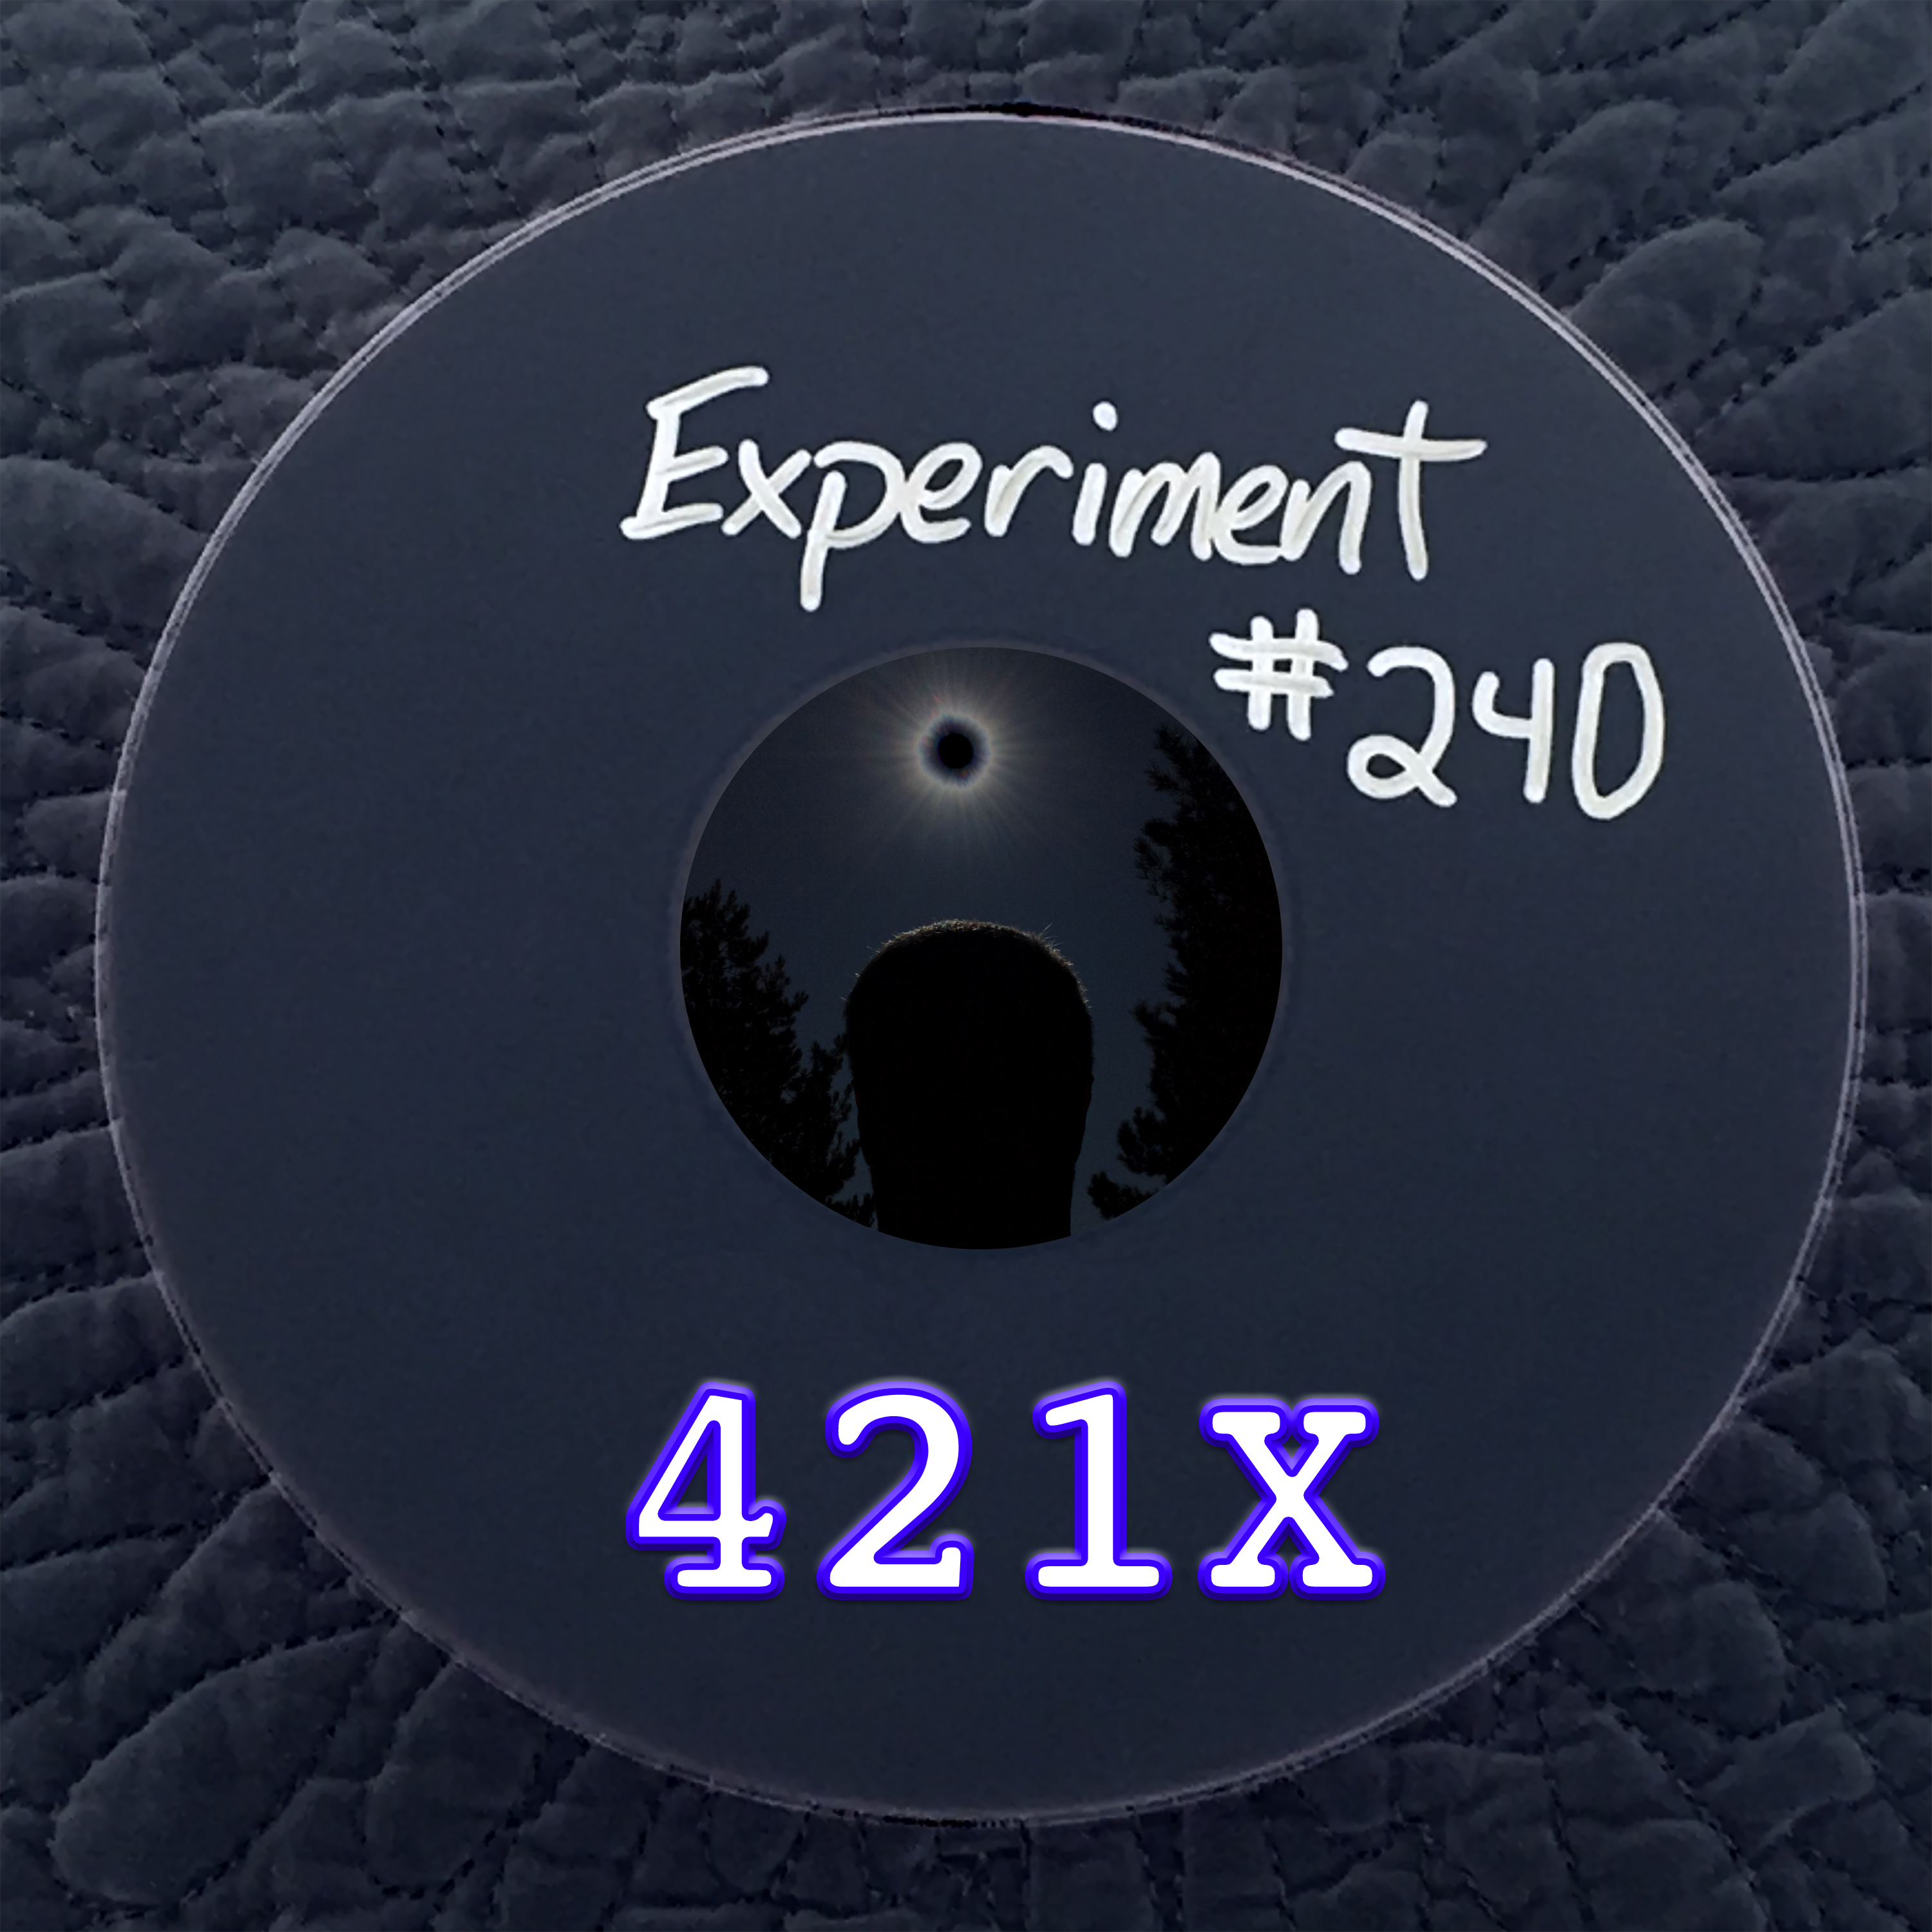 Experiment #240 - 421X